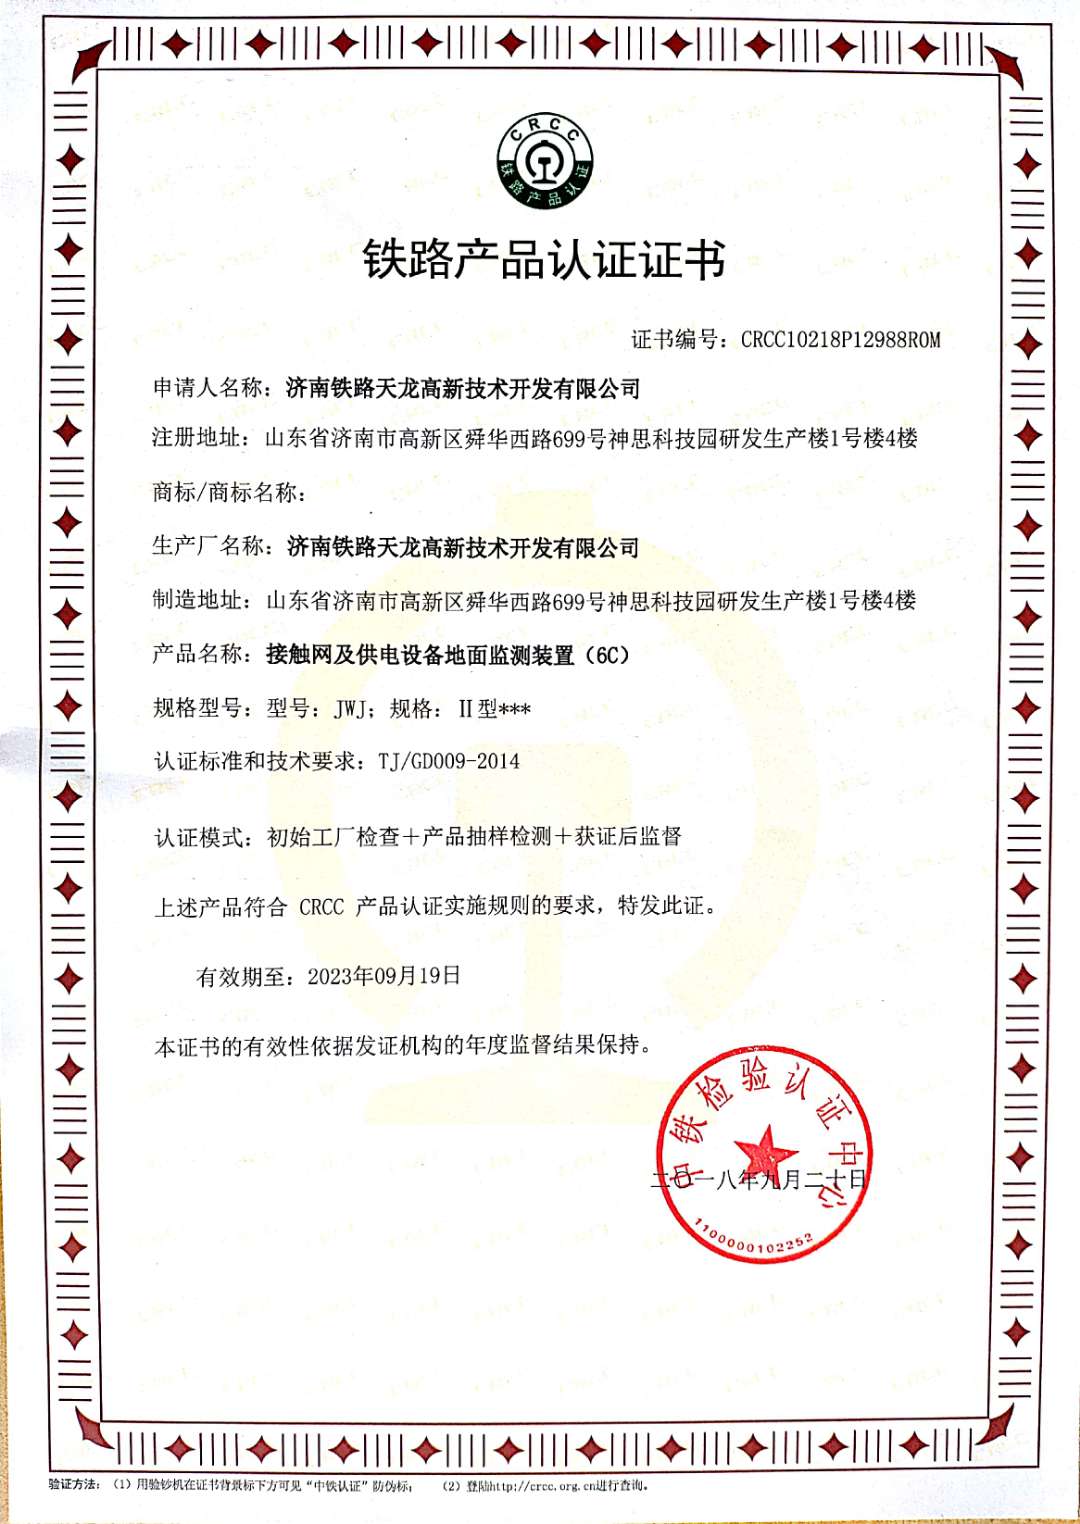 公司取得产品CRCC认证证书